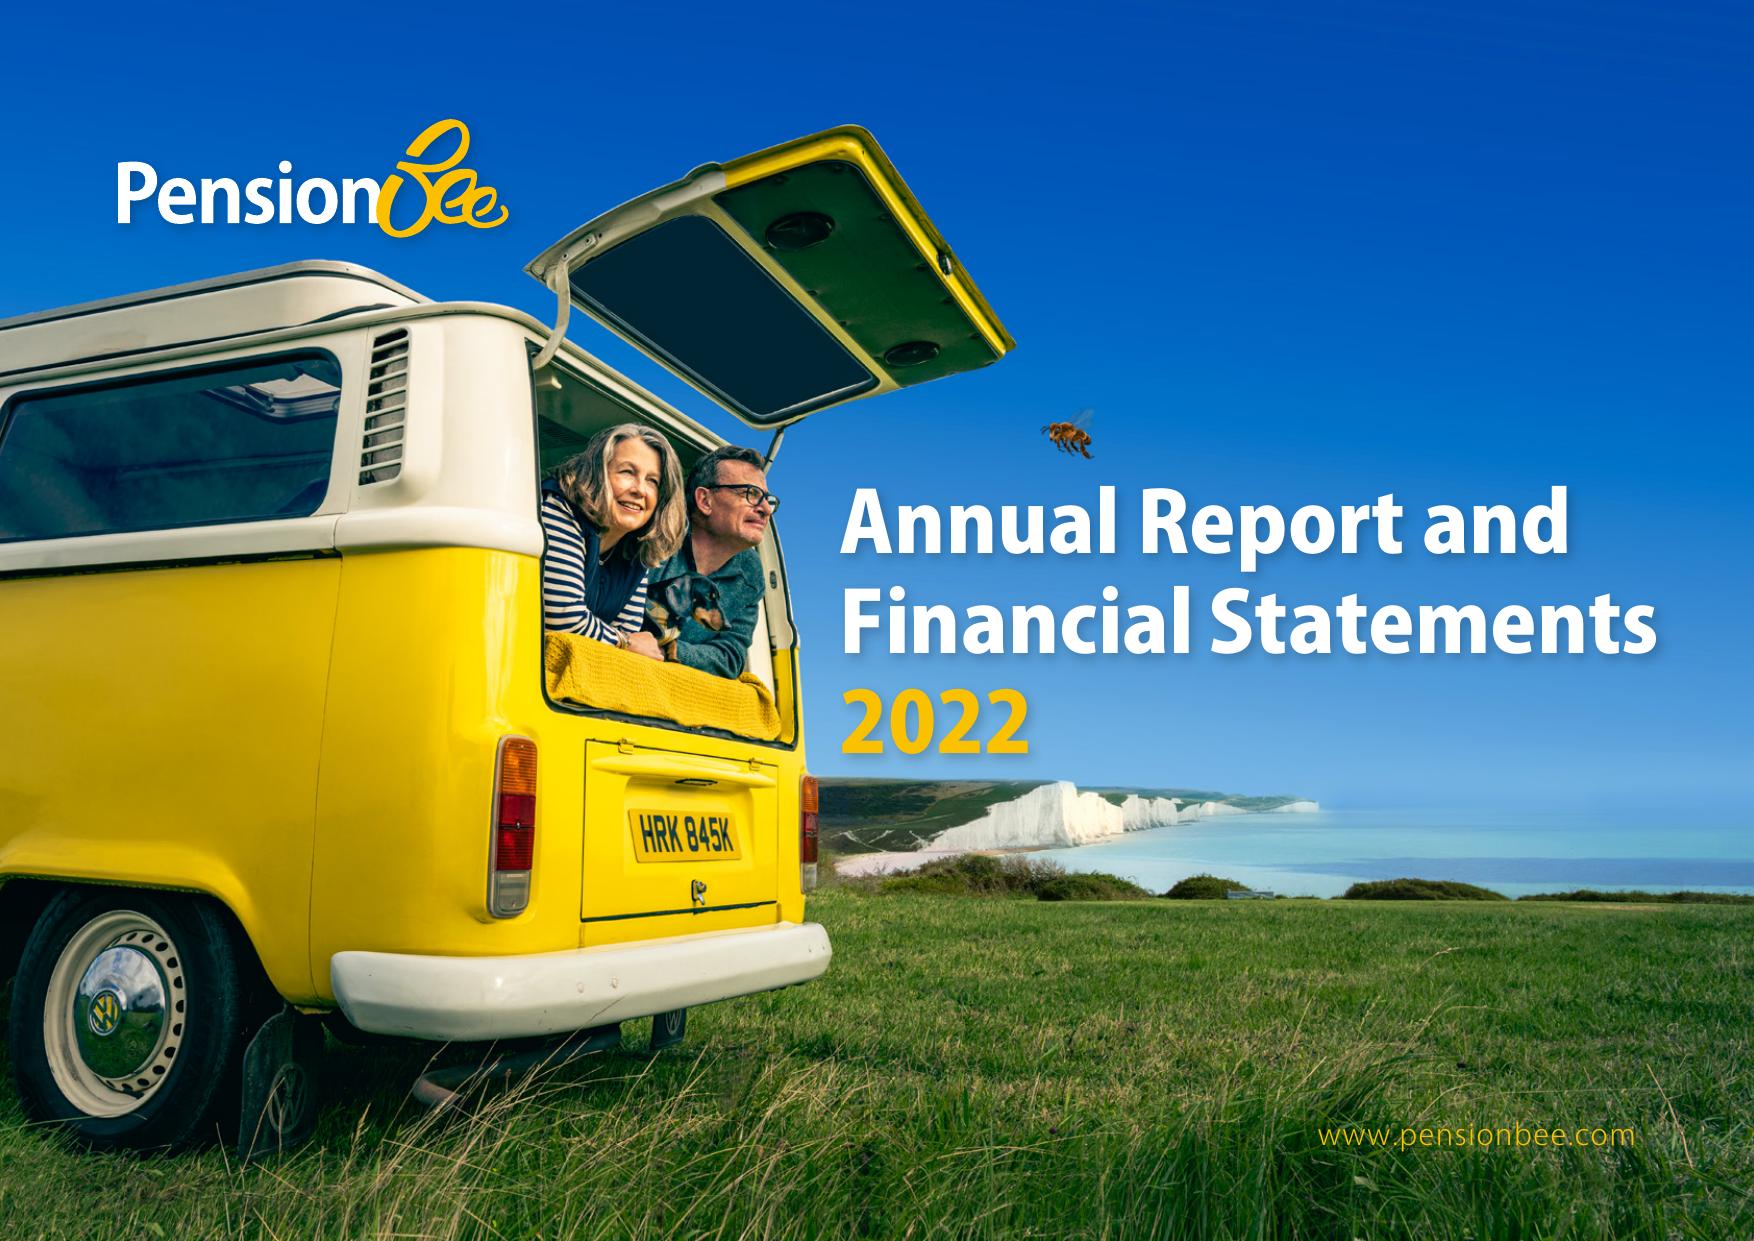 PENSIONBEE 2023 Annual Report